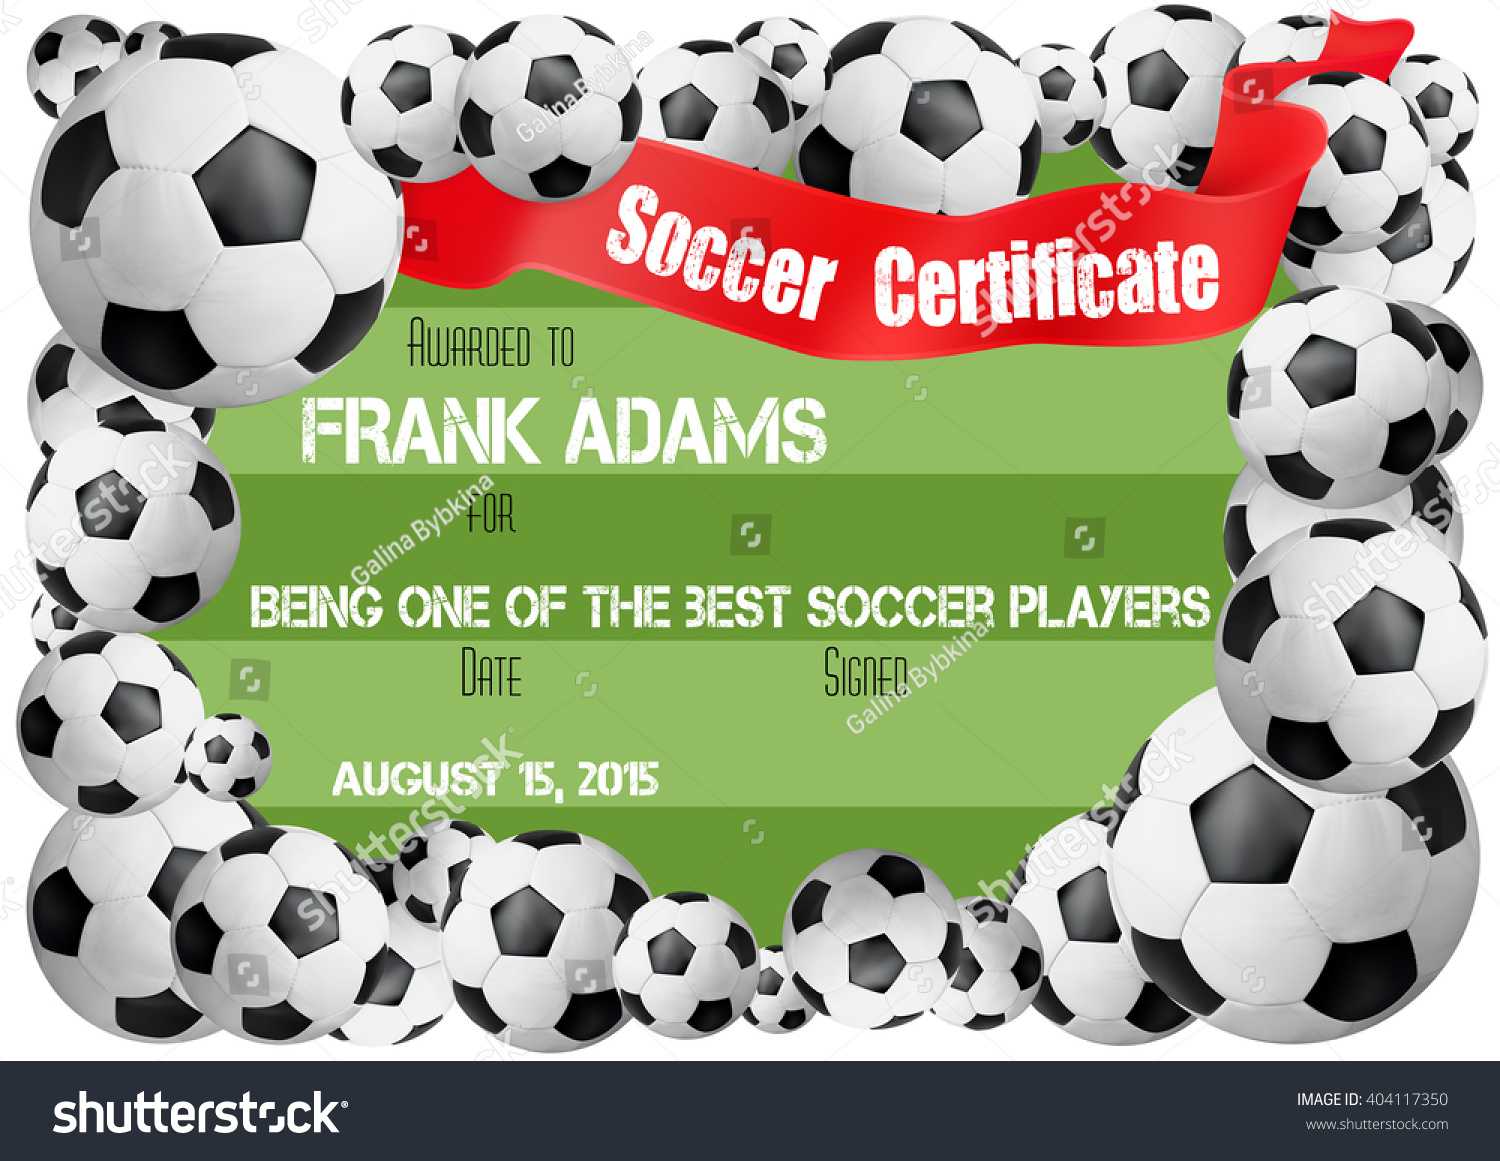 Soccer Certificate Template Football Ball Icons Stock Vector For Soccer Certificate Template Free